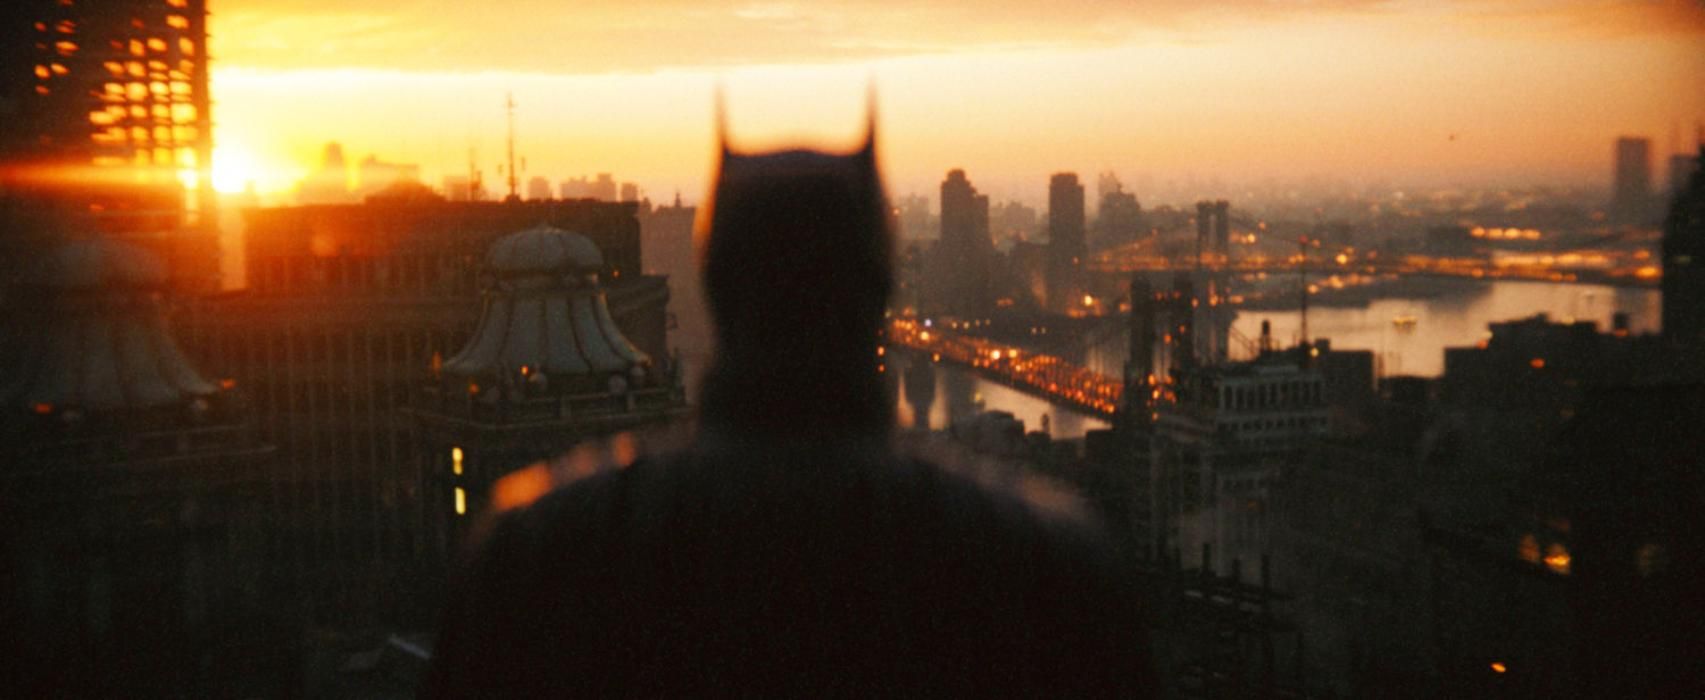 "Бетмен" – гострий і насичений подіями трилер": Warner Bros. опублікувала офіційний синопсис - Кіно